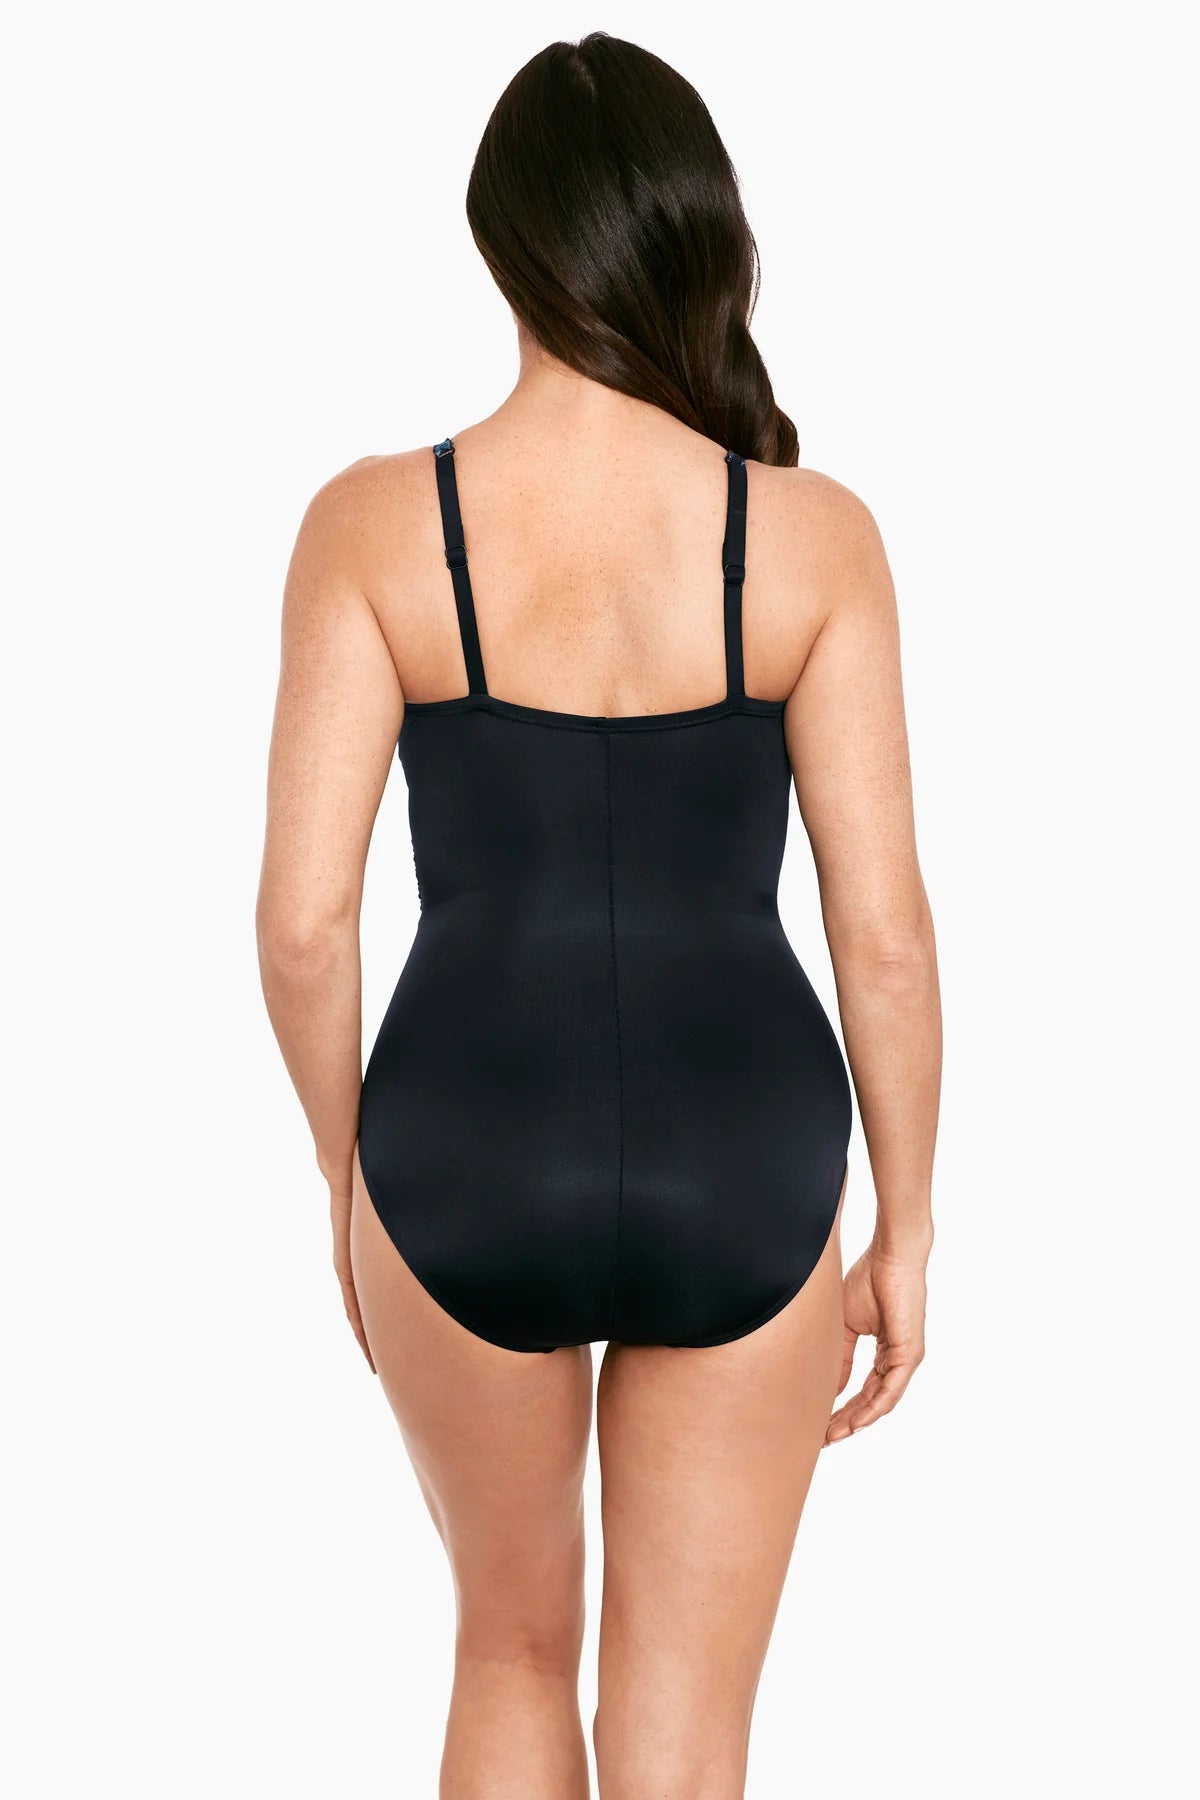 Titania Mystique Swimsuit In Multi & Black - Miracle Suit